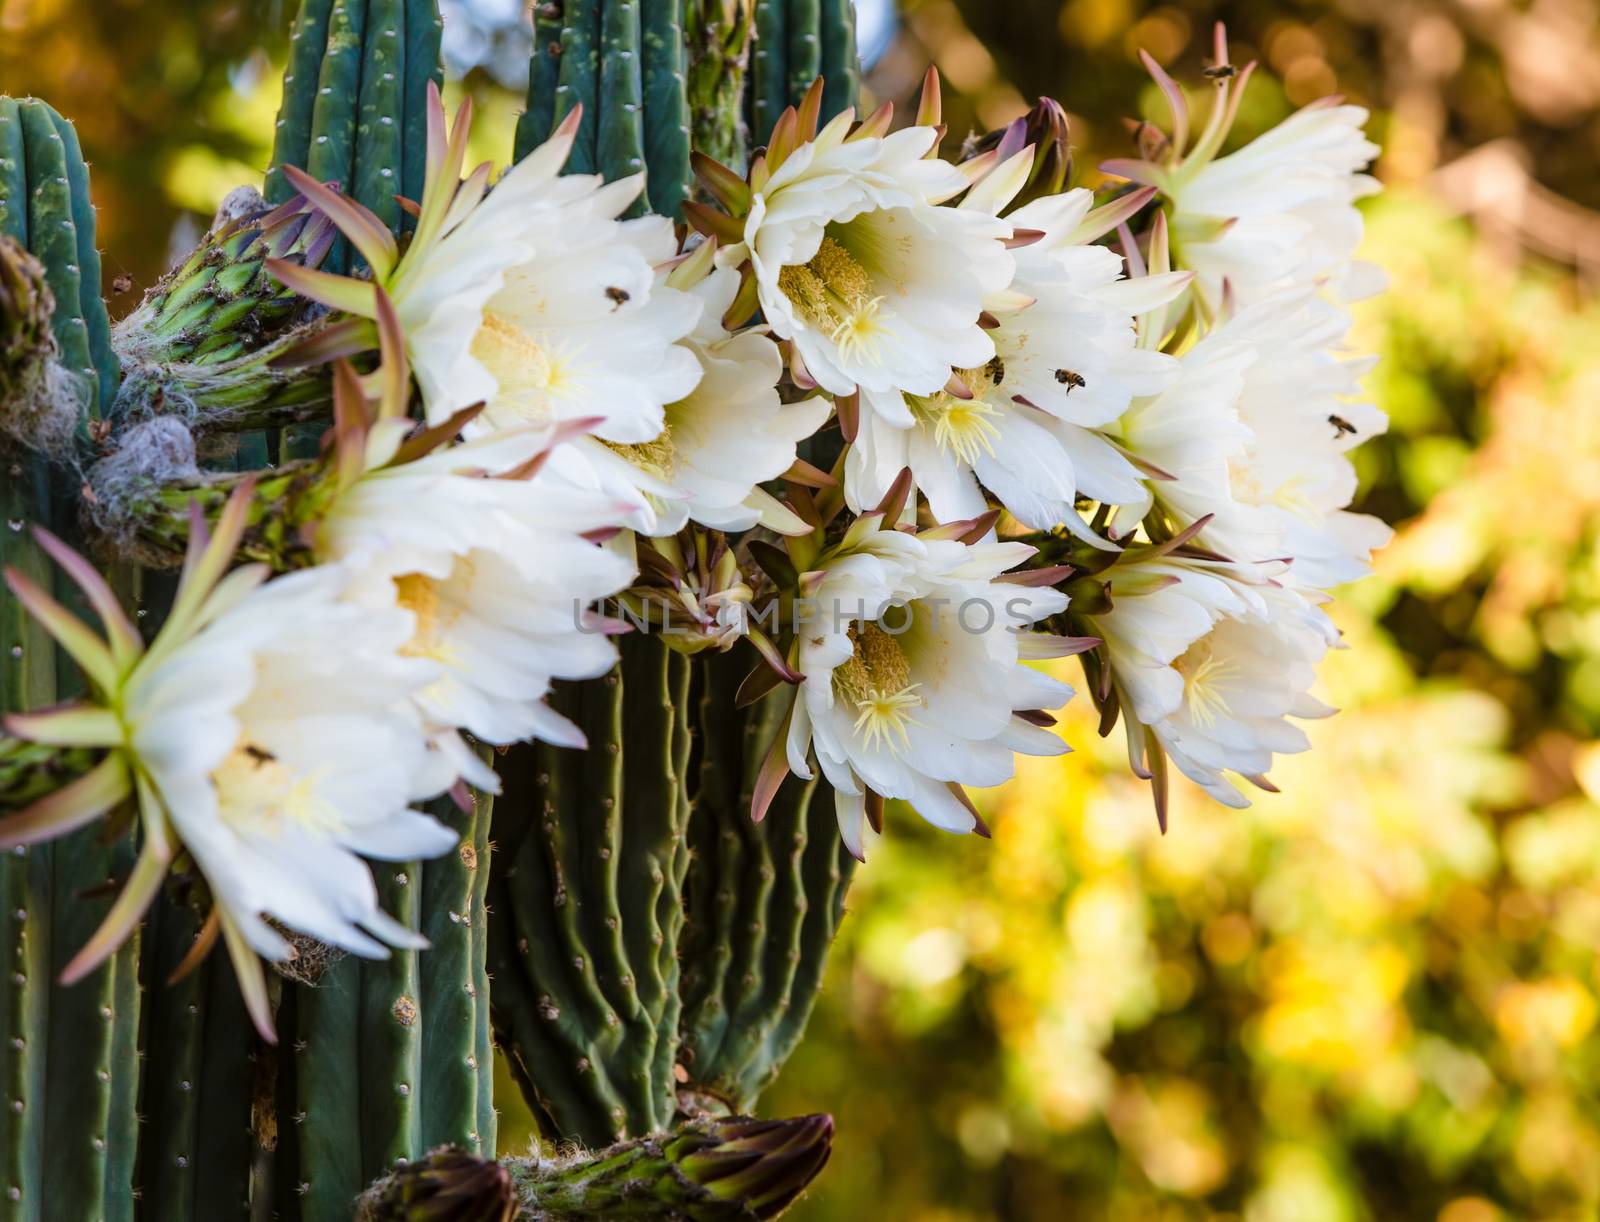 Rare Night Blooming Cereus Cactus by Creatista